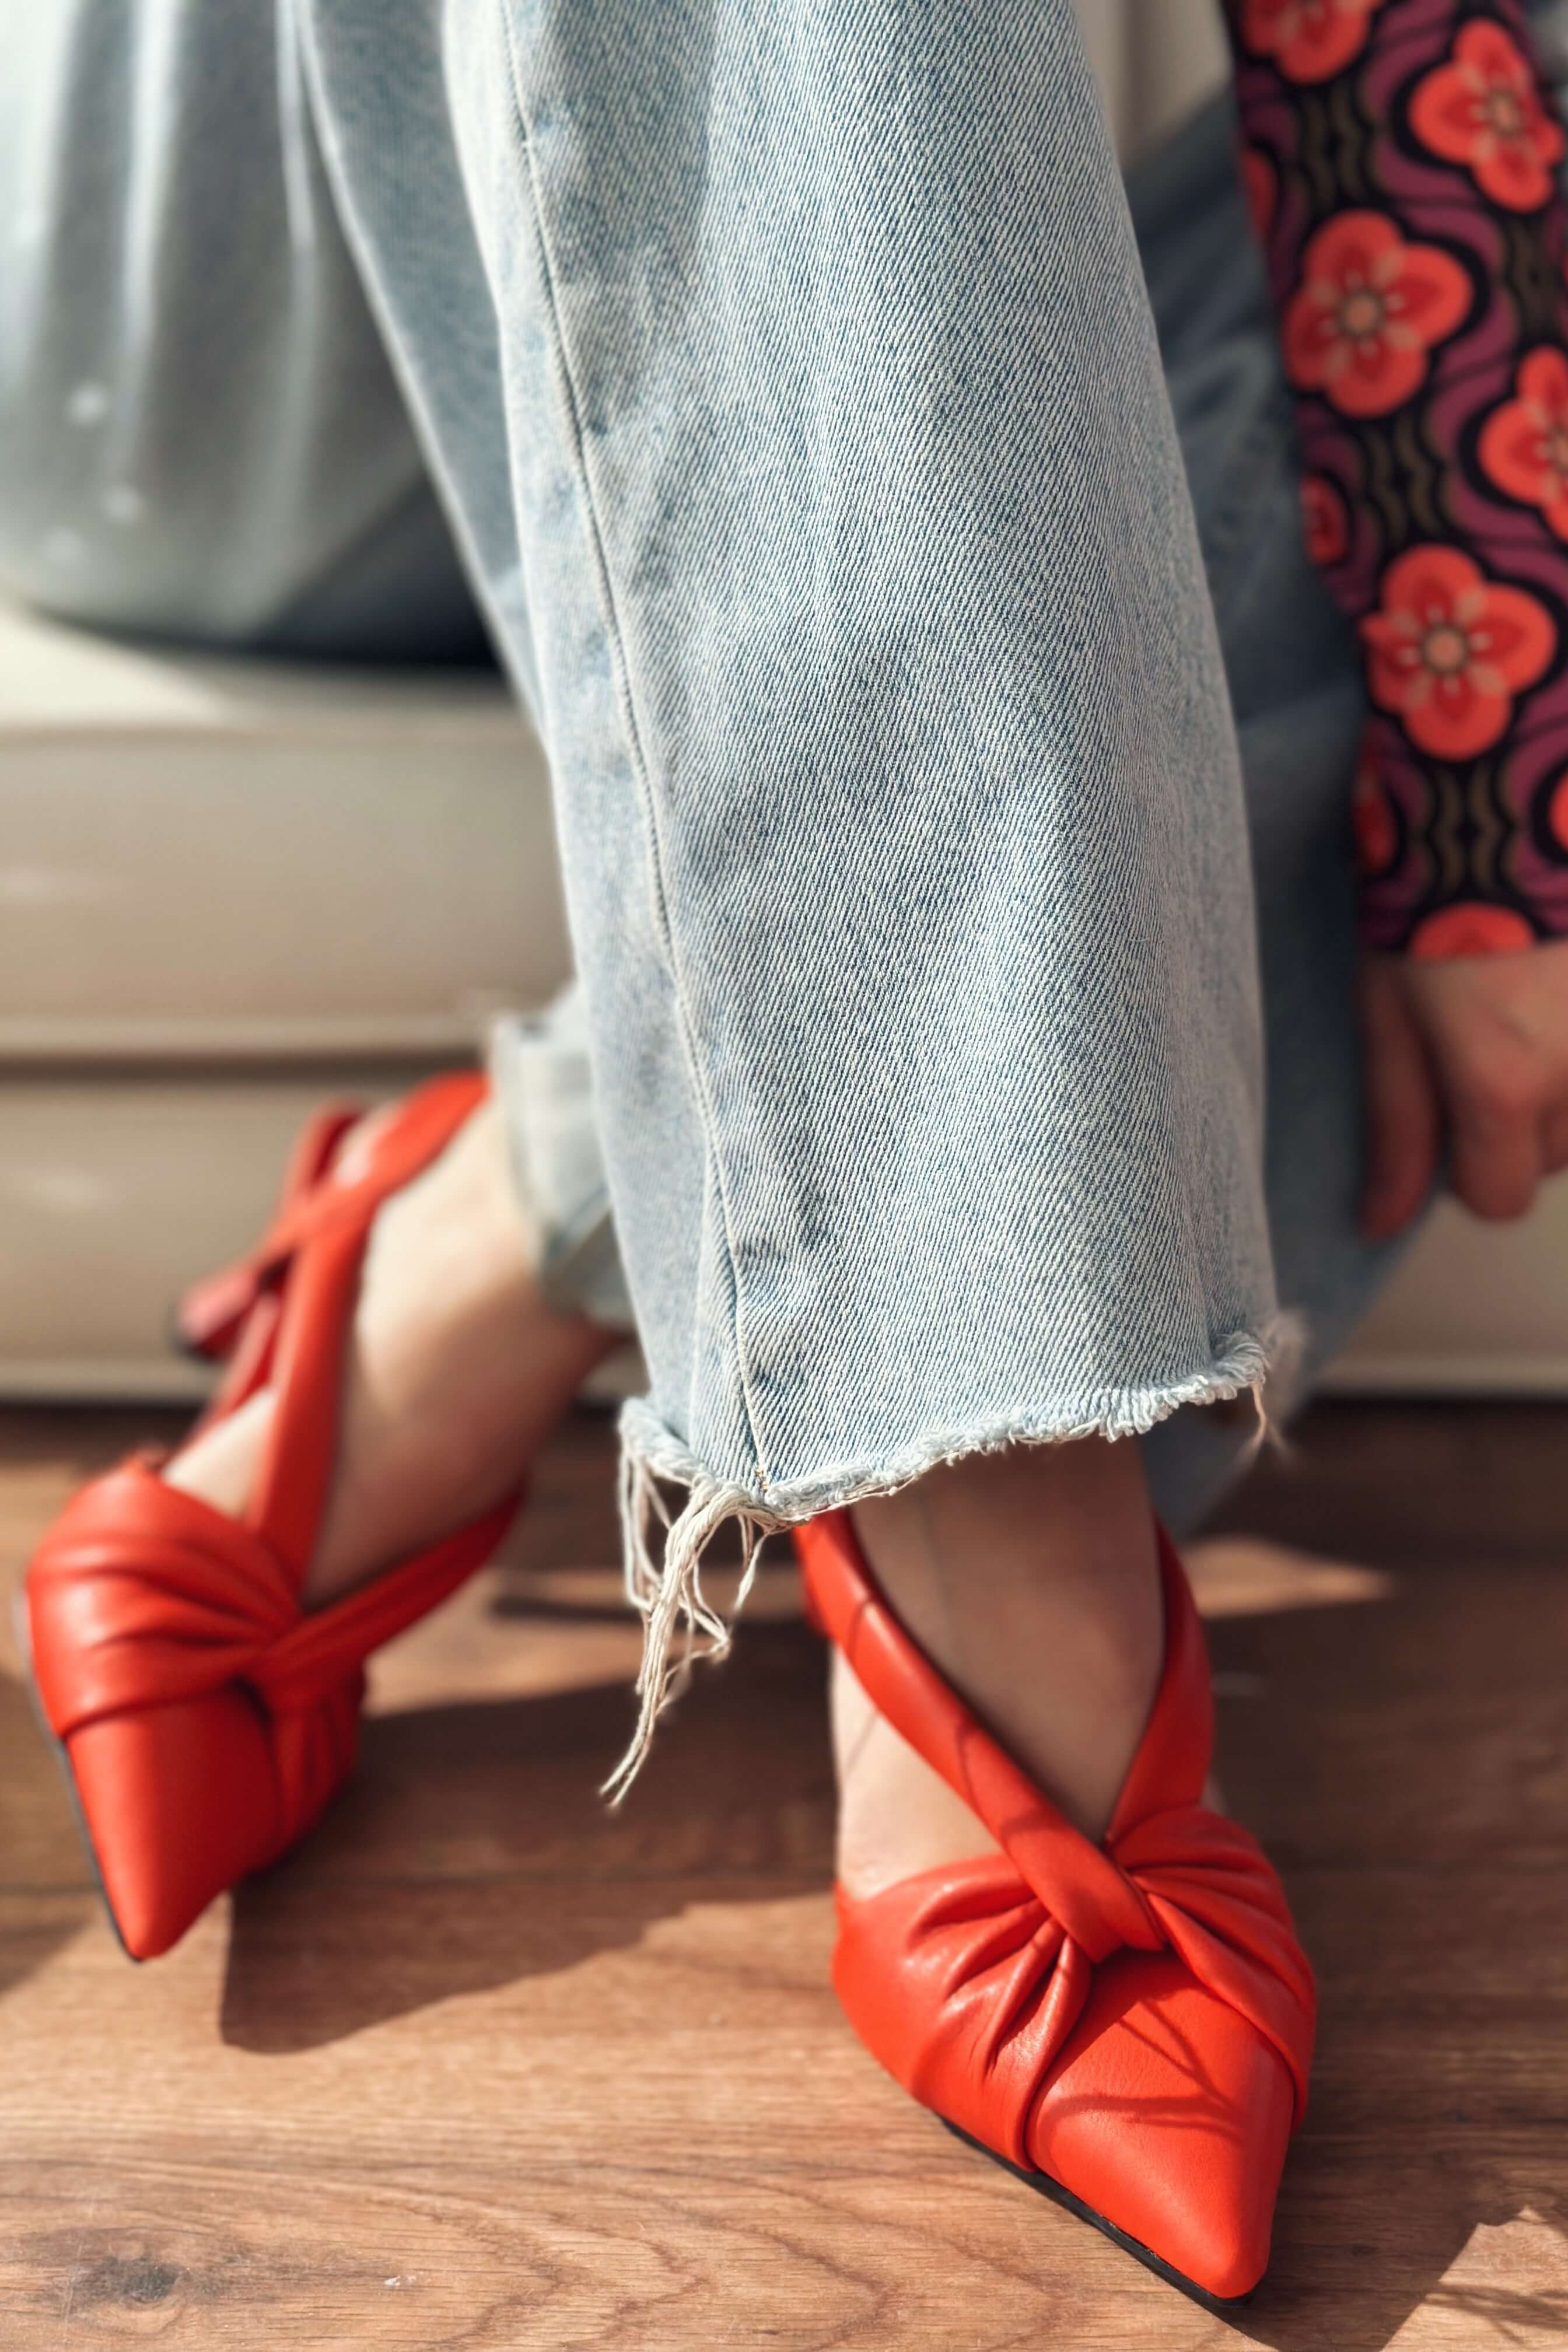 Anesta Mat Deri Kısa Topuklu Kadın Stiletto Kırmızı